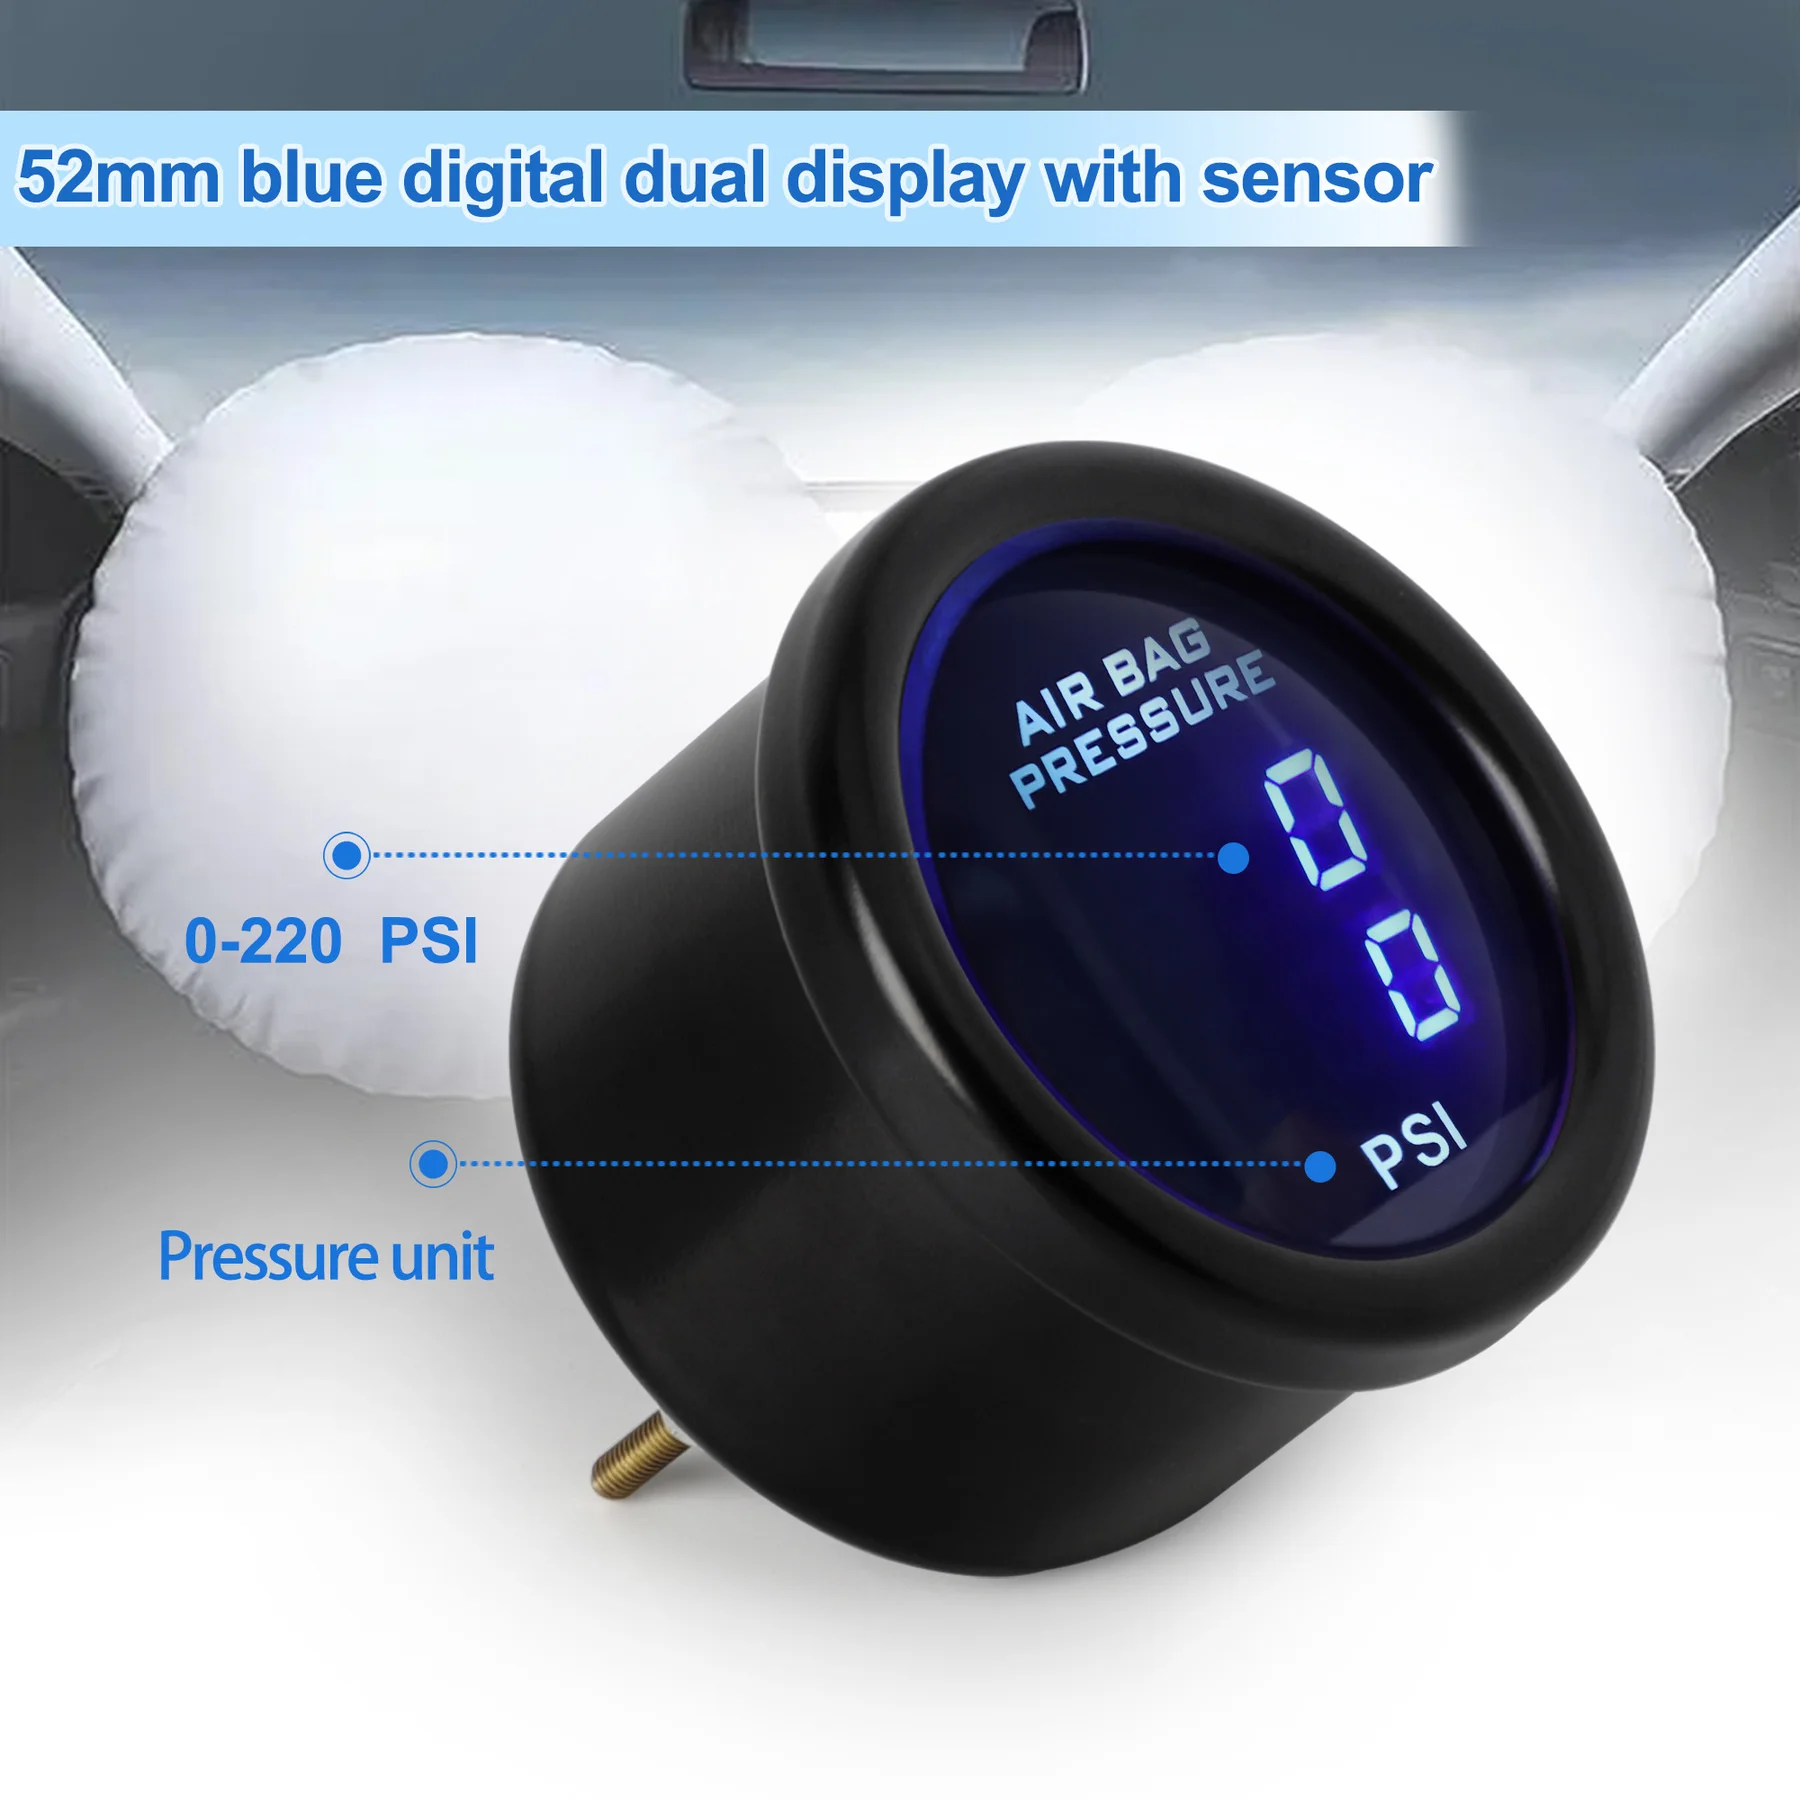 52mm vzduch suspenze měrný tlak měrka modrý LED dvojí digitální displej vzduch jet vzduch tisk s 2ks 1/8 NPT elektrický senzor